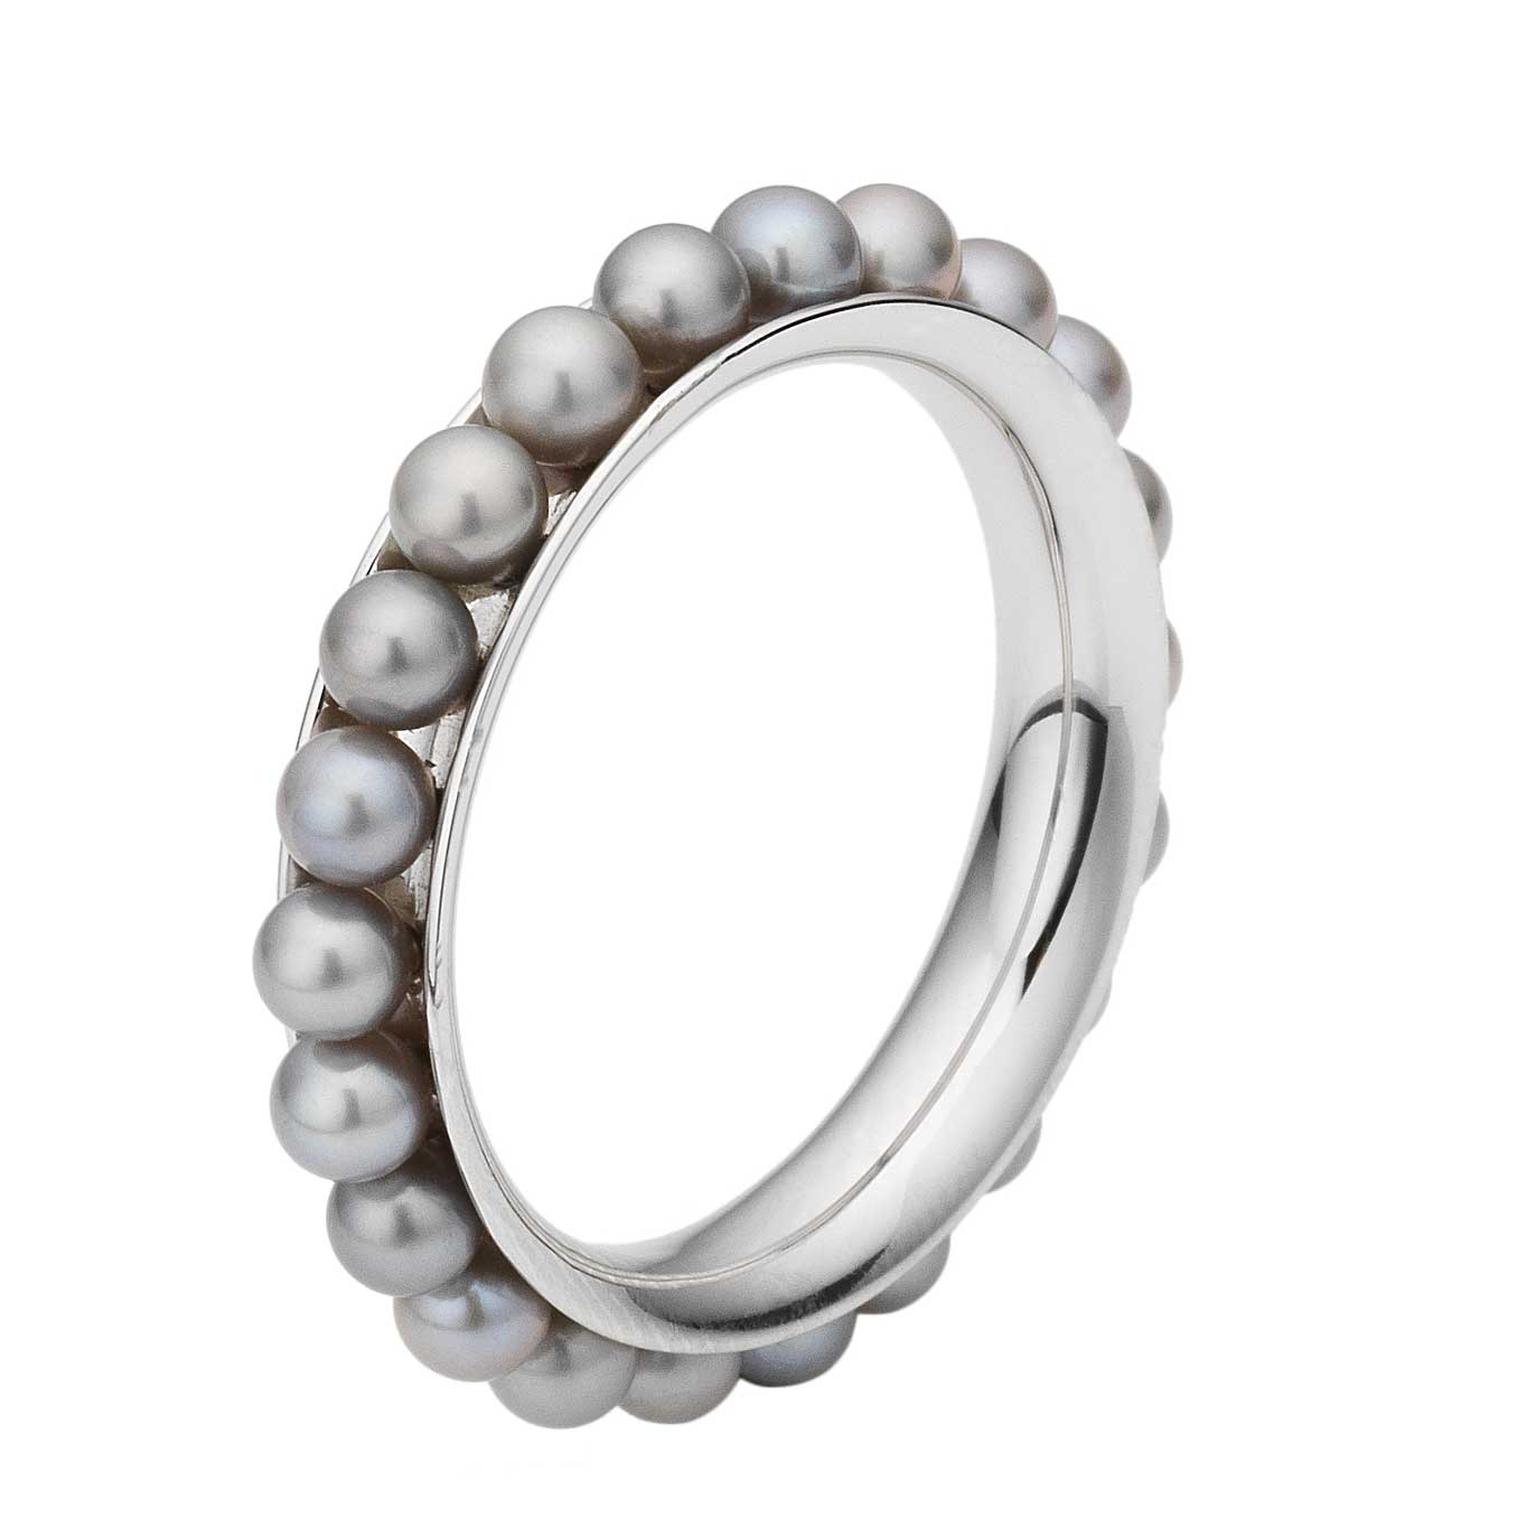 Melanie Georgacopoulos grey pearl bracelet